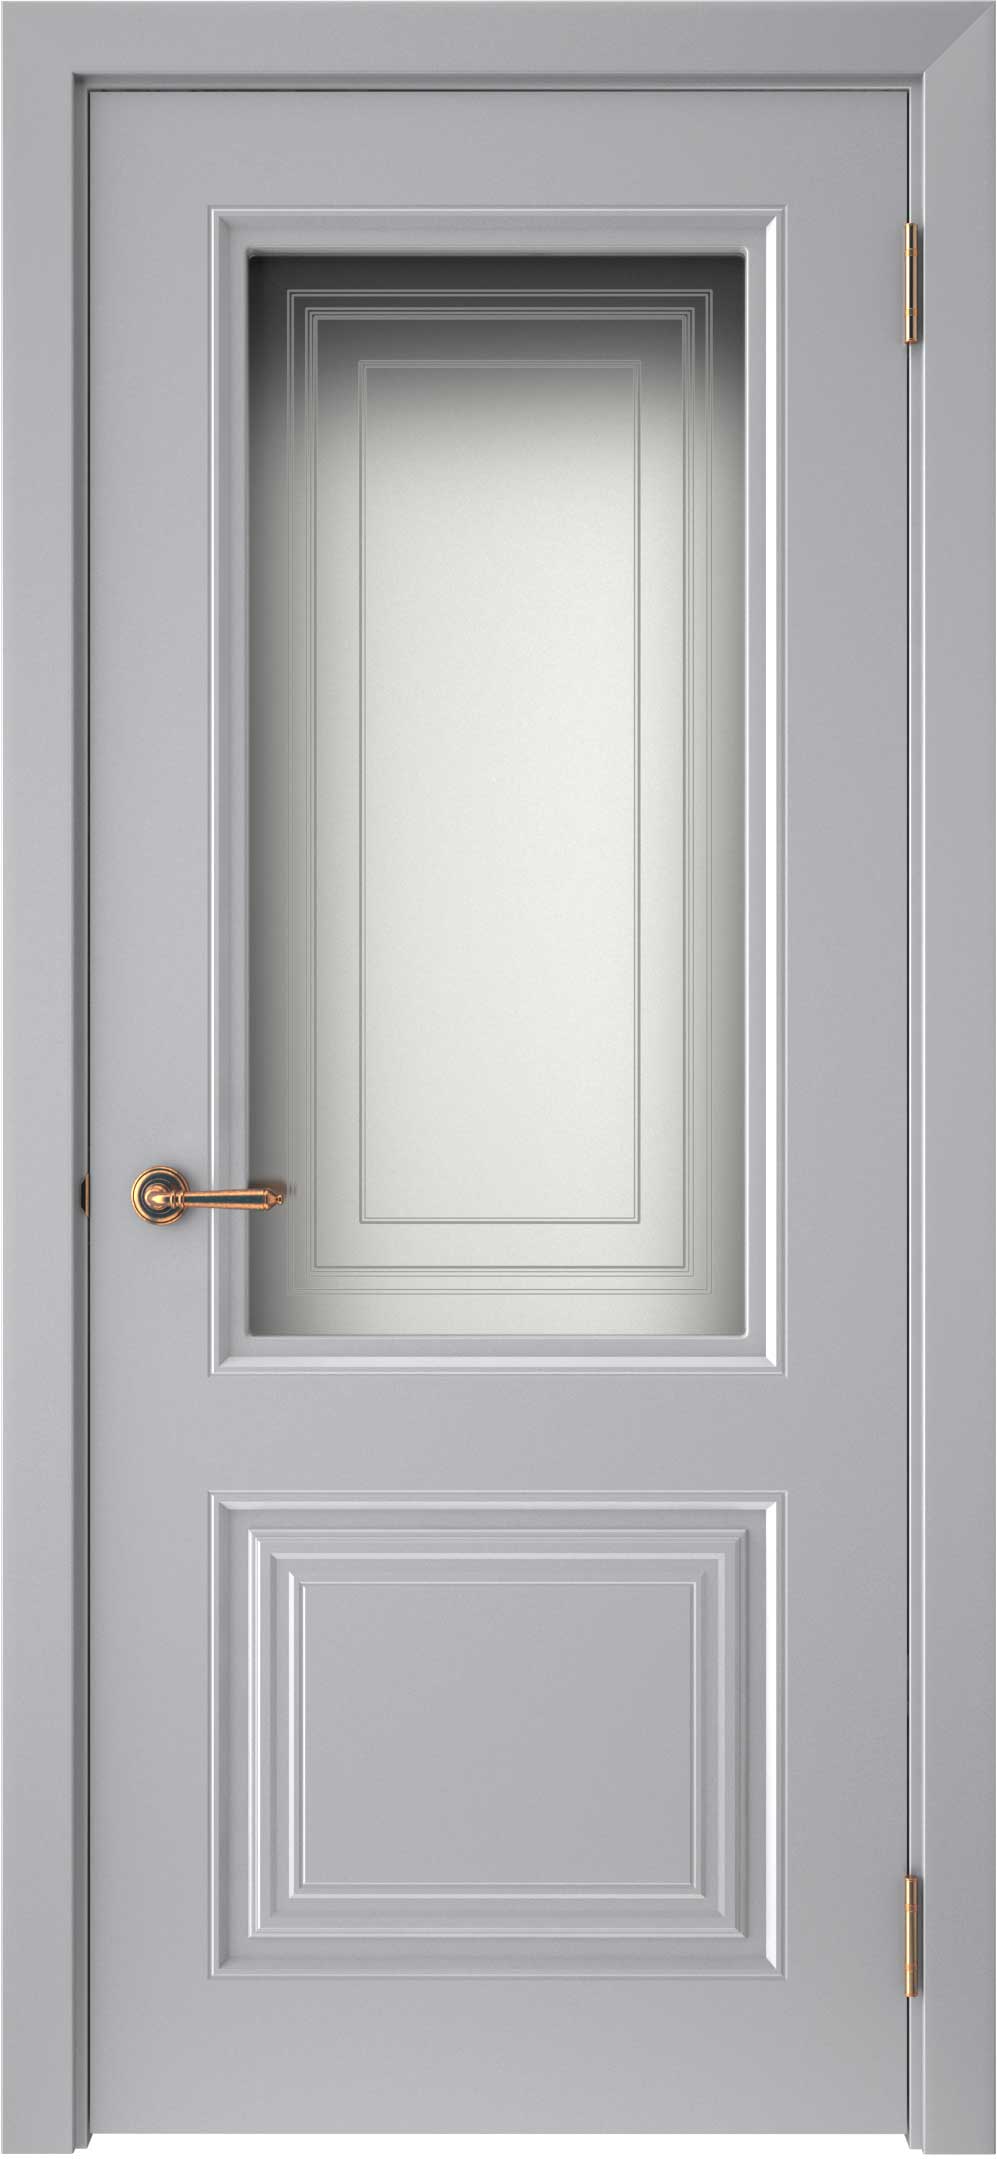 Двери крашеные (Эмаль) ТЕКОНА Смальта-42 со стеклом Серый ral размер 200 х 60 см. артикул F0000093293